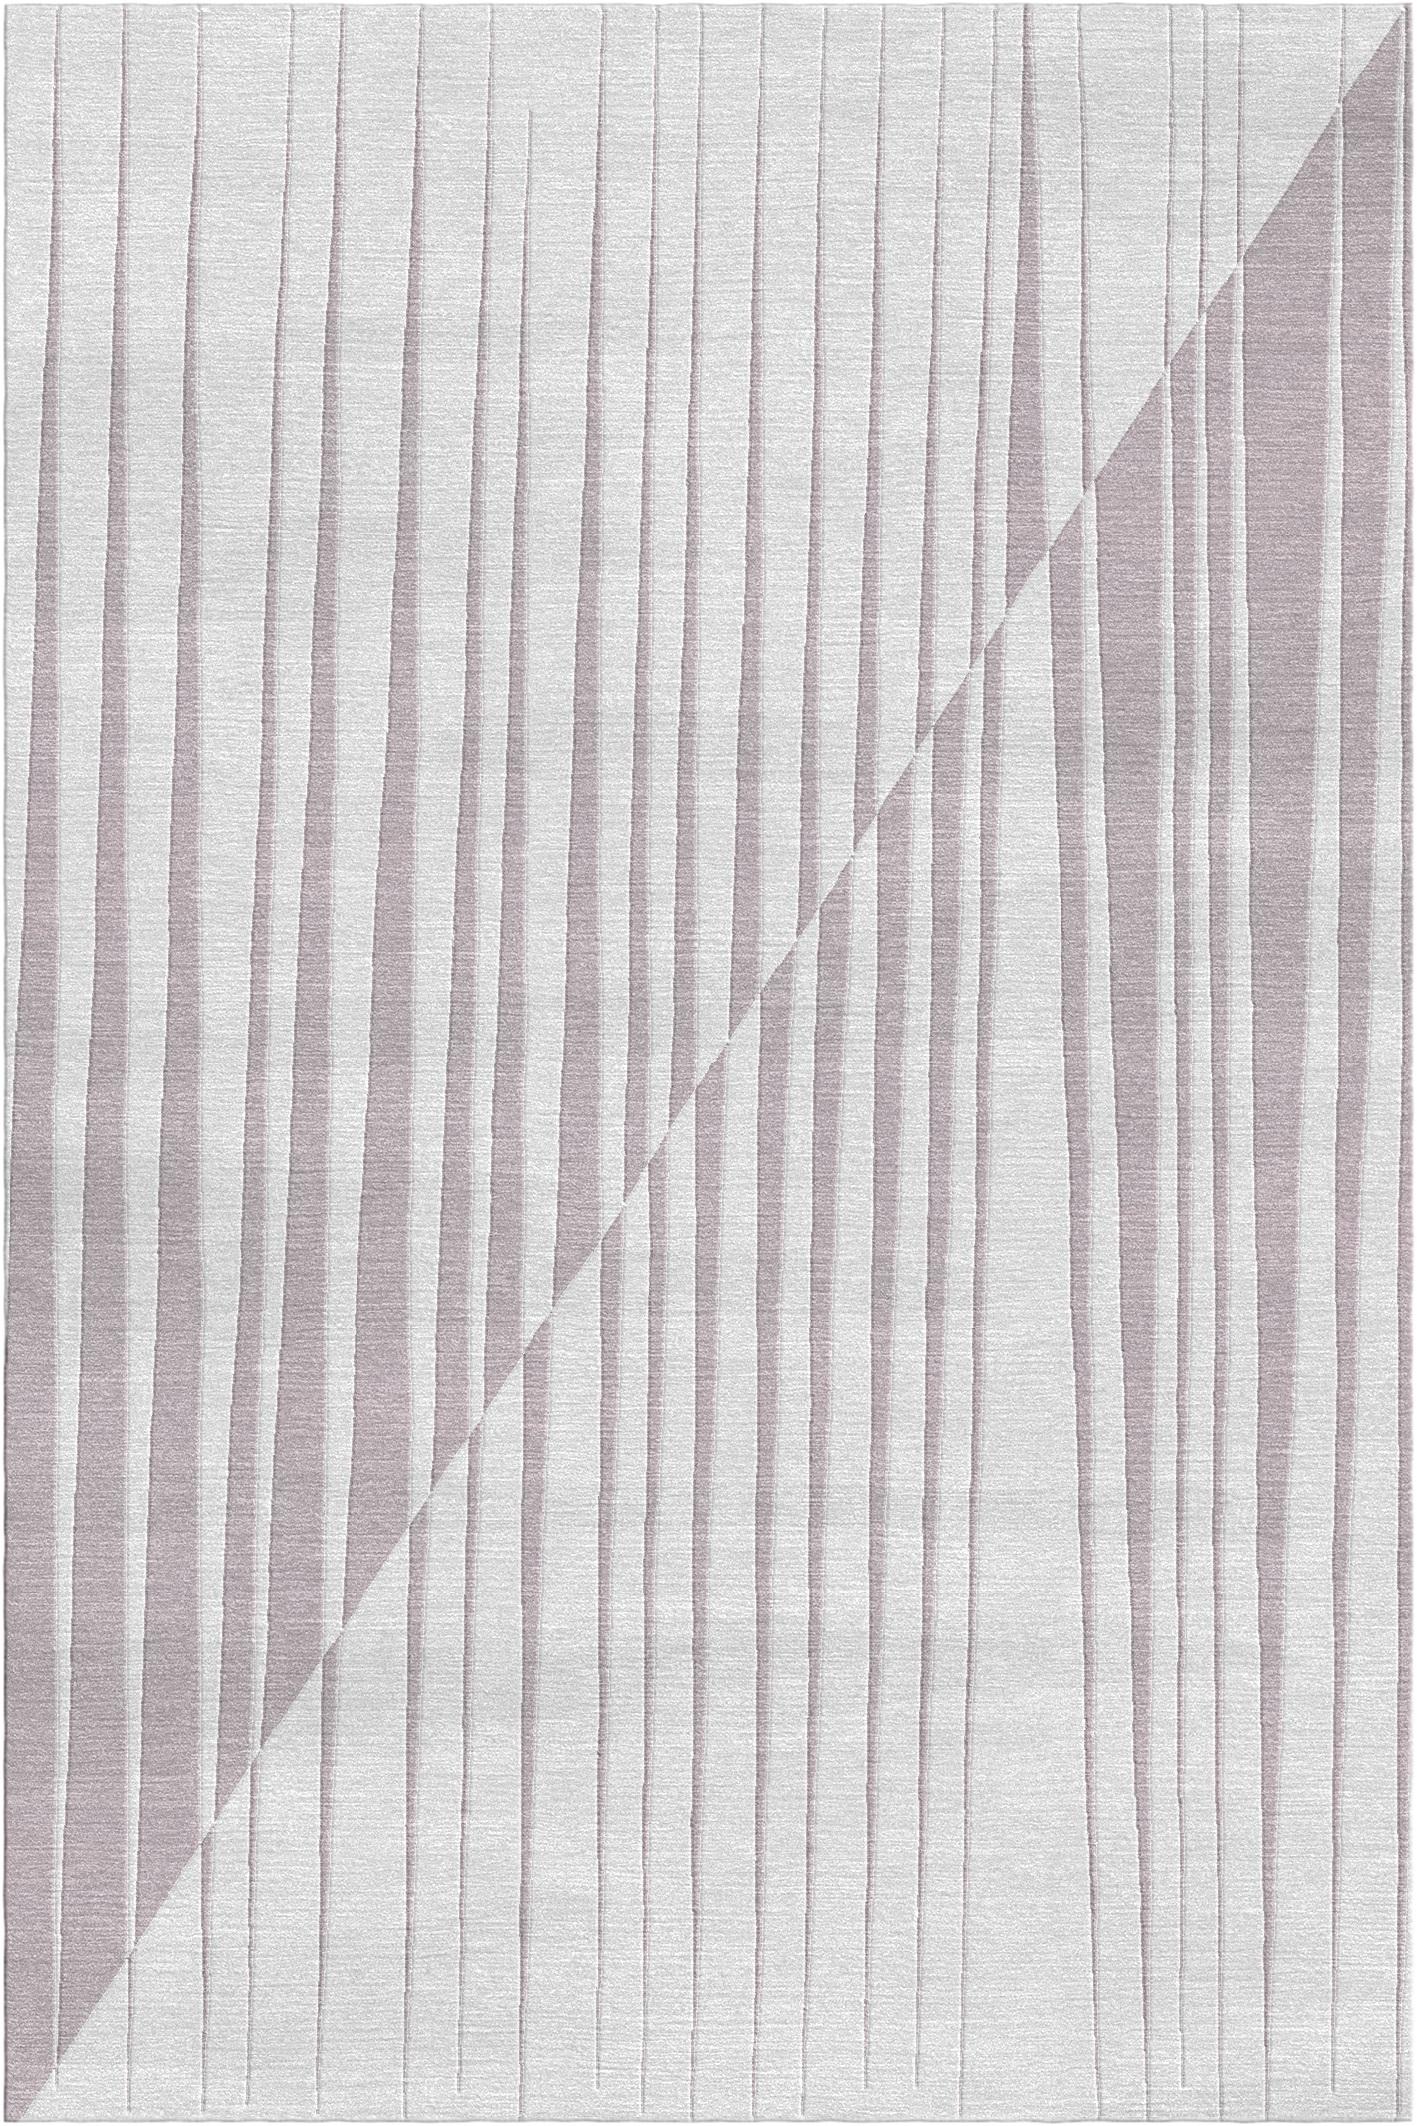 Spieghe-Teppich II von Giulio Brambilla.
Abmessungen: D 300 x B 200 x H 1,5 cm.
MATERIALIEN: NZ-Wolle, Bambusseide.
Erhältlich in anderen Farben.

Eine faszinierende Kombination aus Tradition und Innovation macht diesen Teppich zu einem Blickfang in